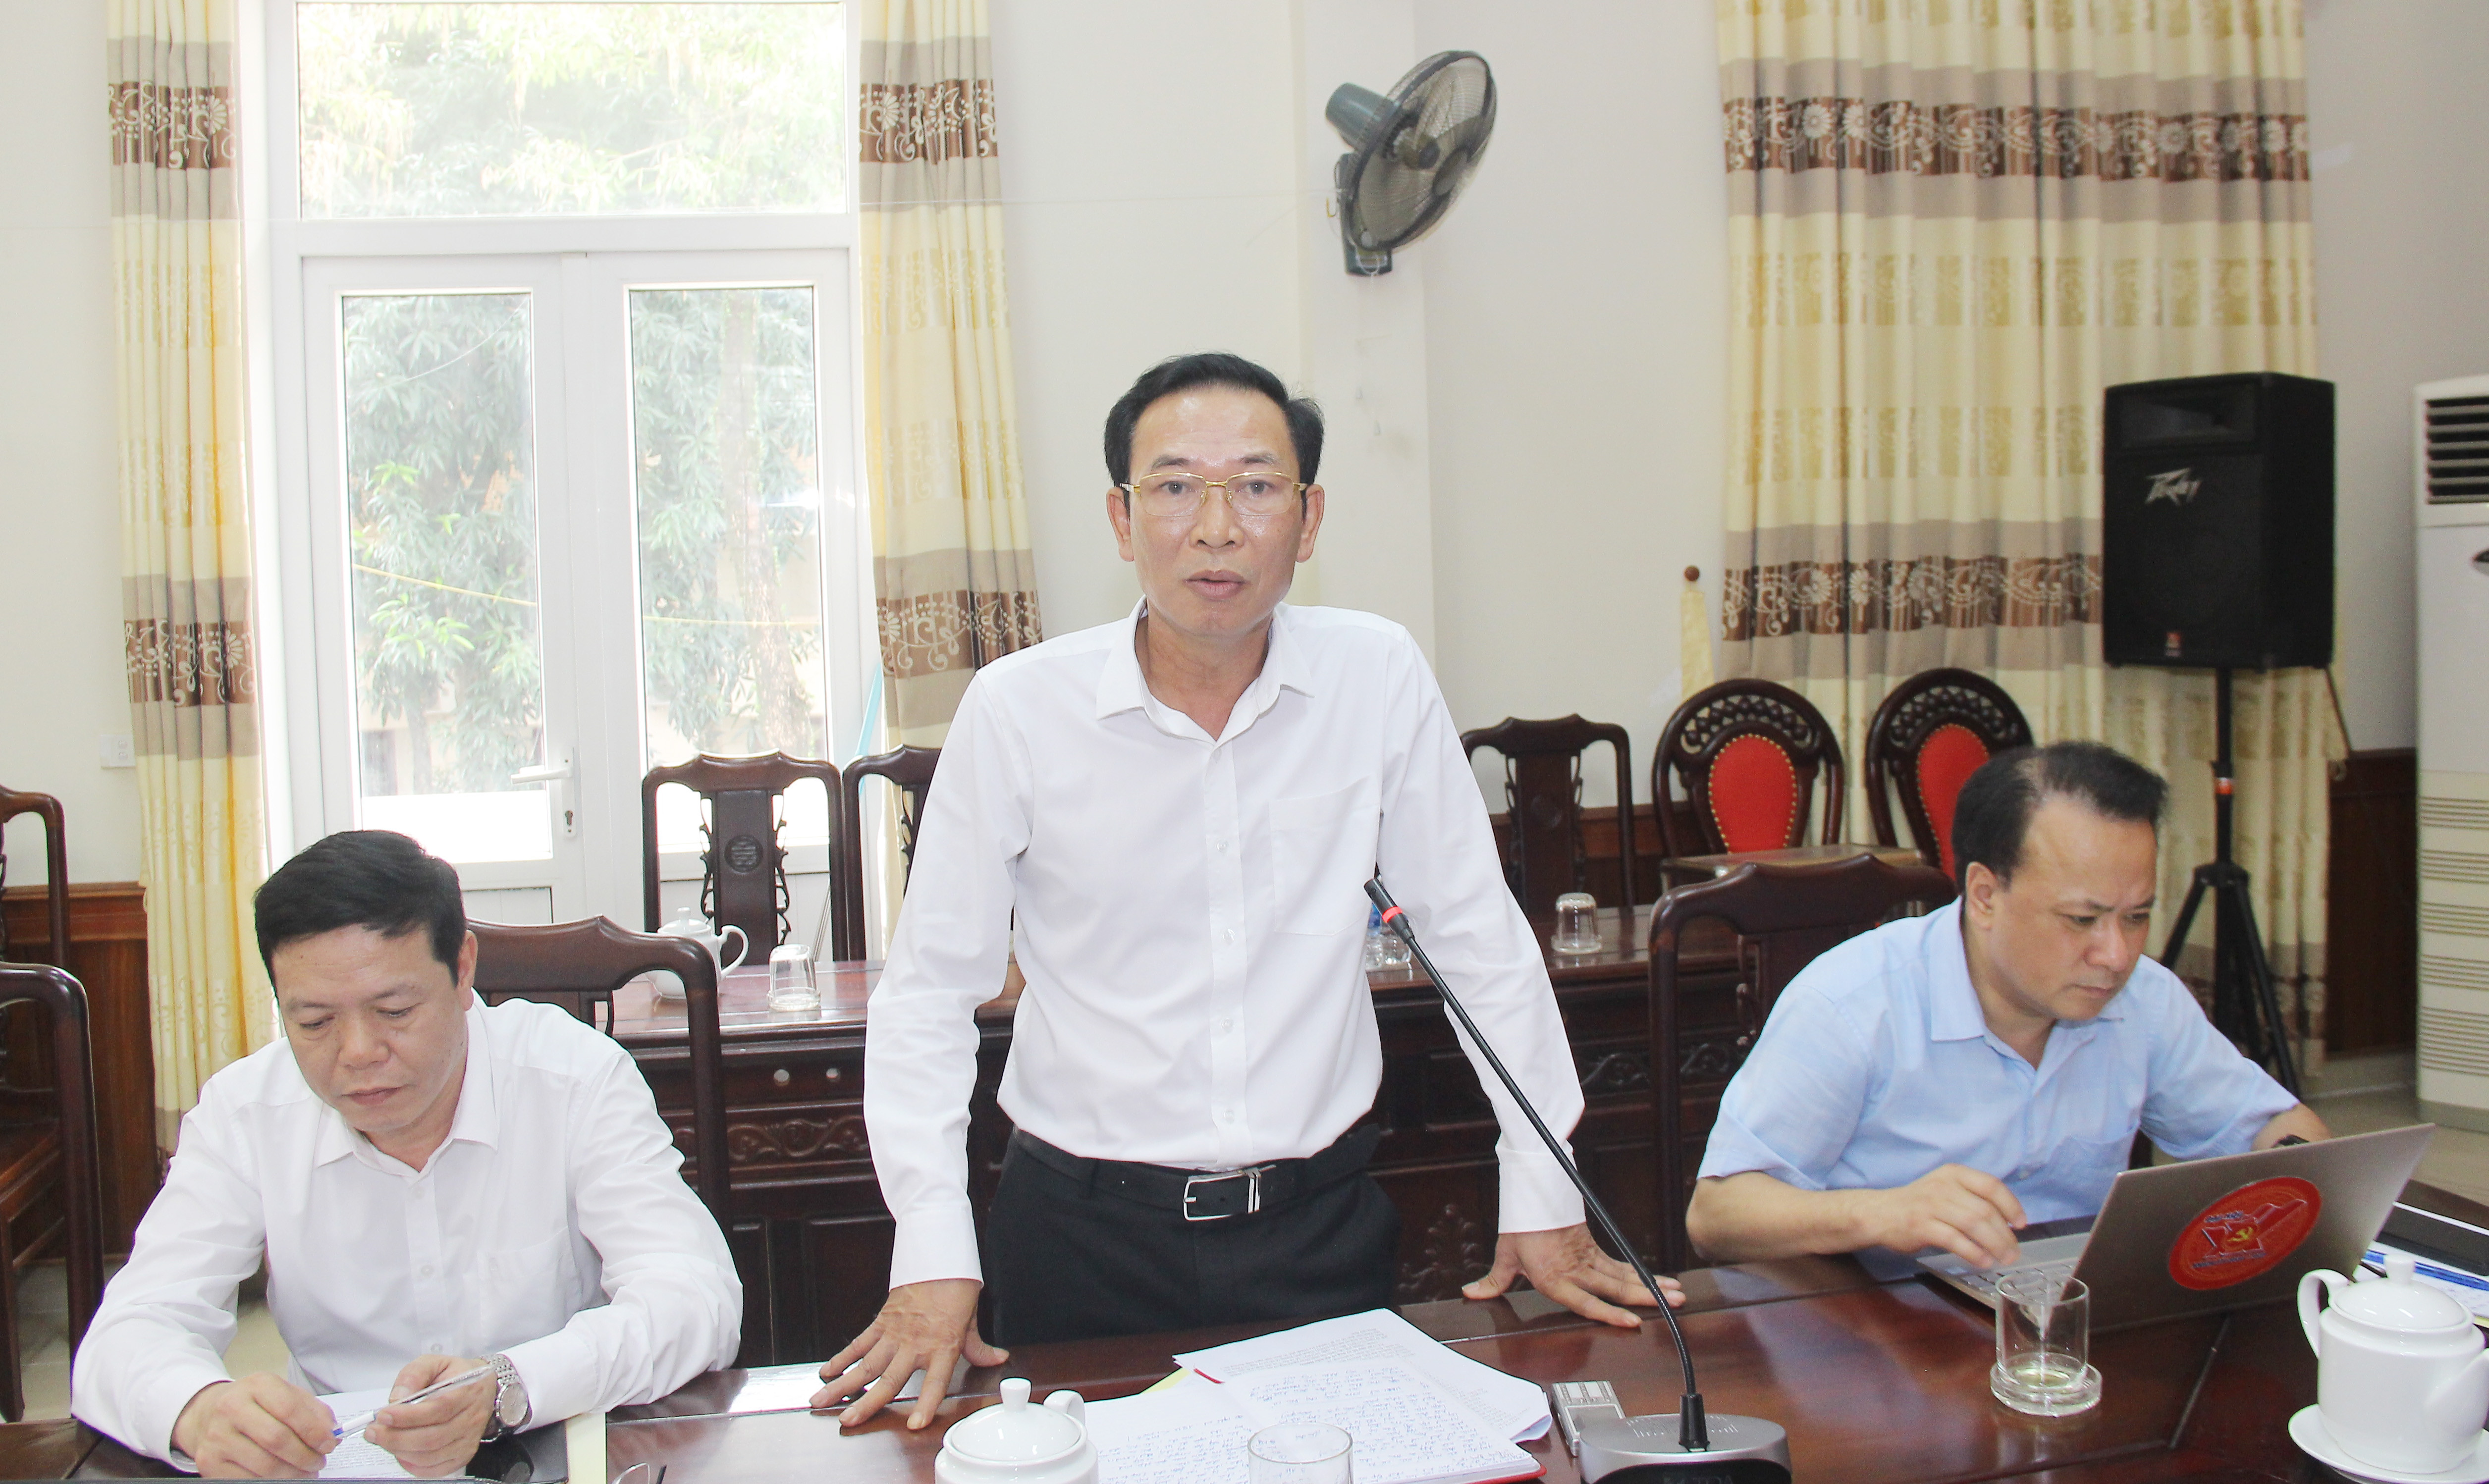 Đồng chí Nguyễn Xuân Hải - Giám đốc Sở Tài chính, thành viên Ủy ban bầu cử tỉnh cho ý kiến về 